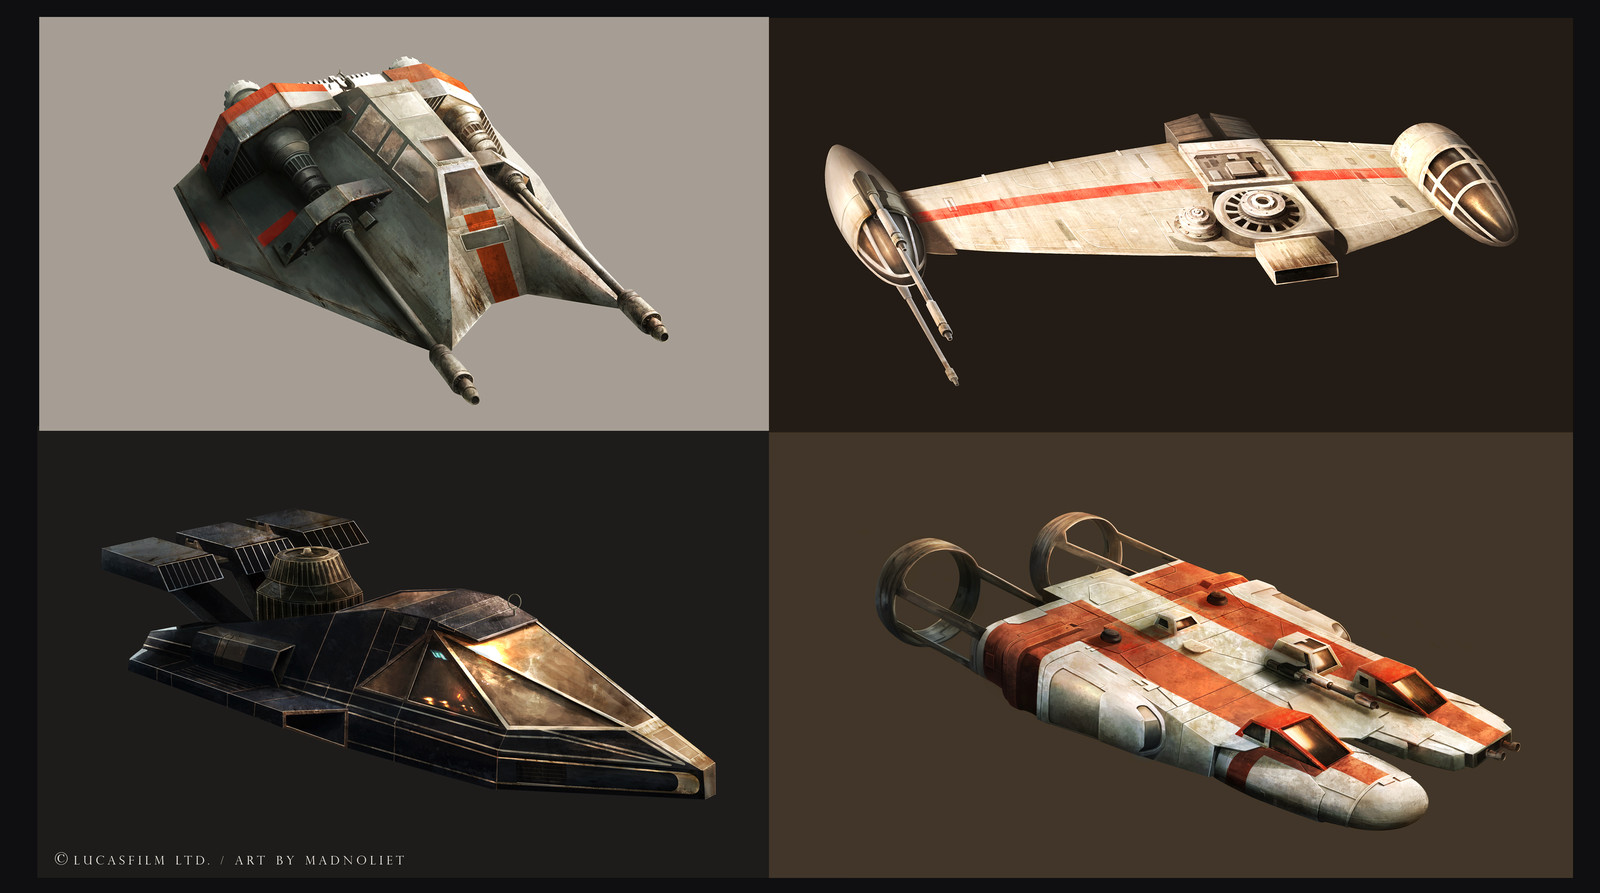 Star Wars ships